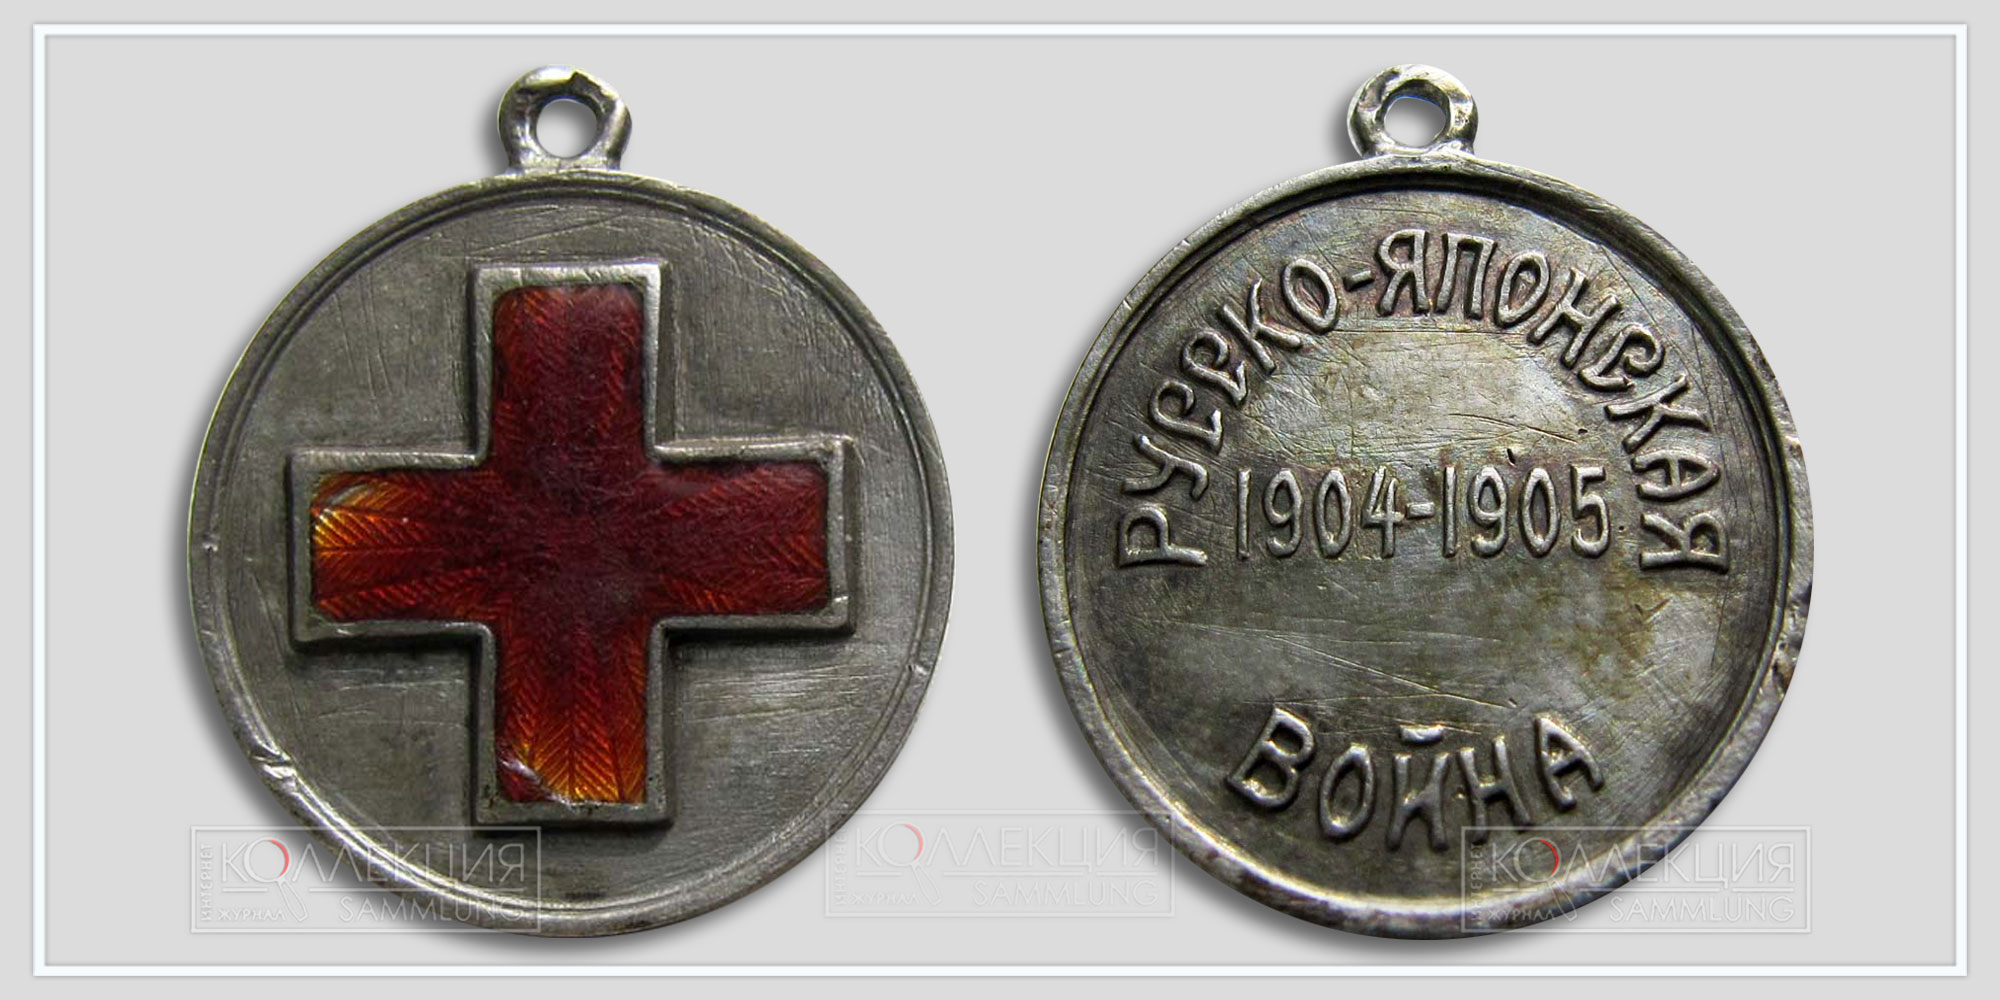 Медаль Красного креста в память Русско-японской войны в дефектами.  Диаметр 2,4. Вес 7,5   (Медаль любезно предоставил Бабаев Виктор г. Кемерово)